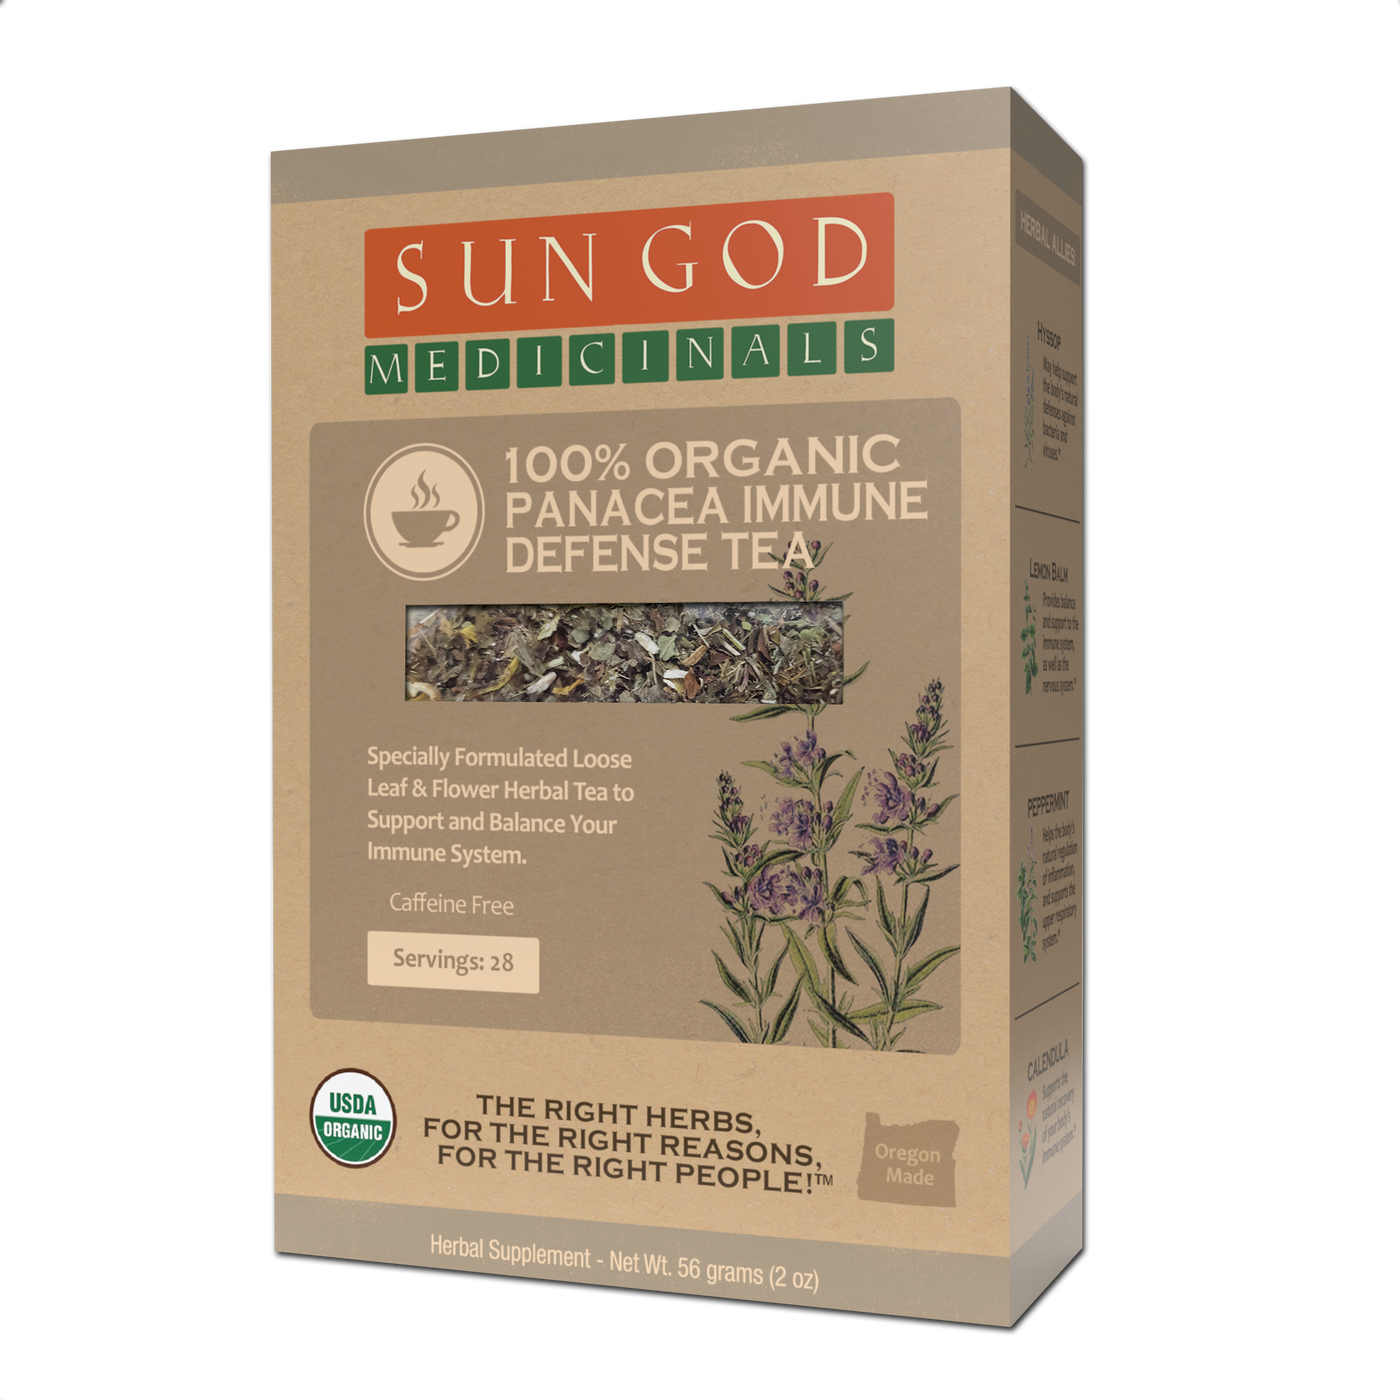 Panacea Immune Defense Organic Herbal Tea - Sun God Medicinals